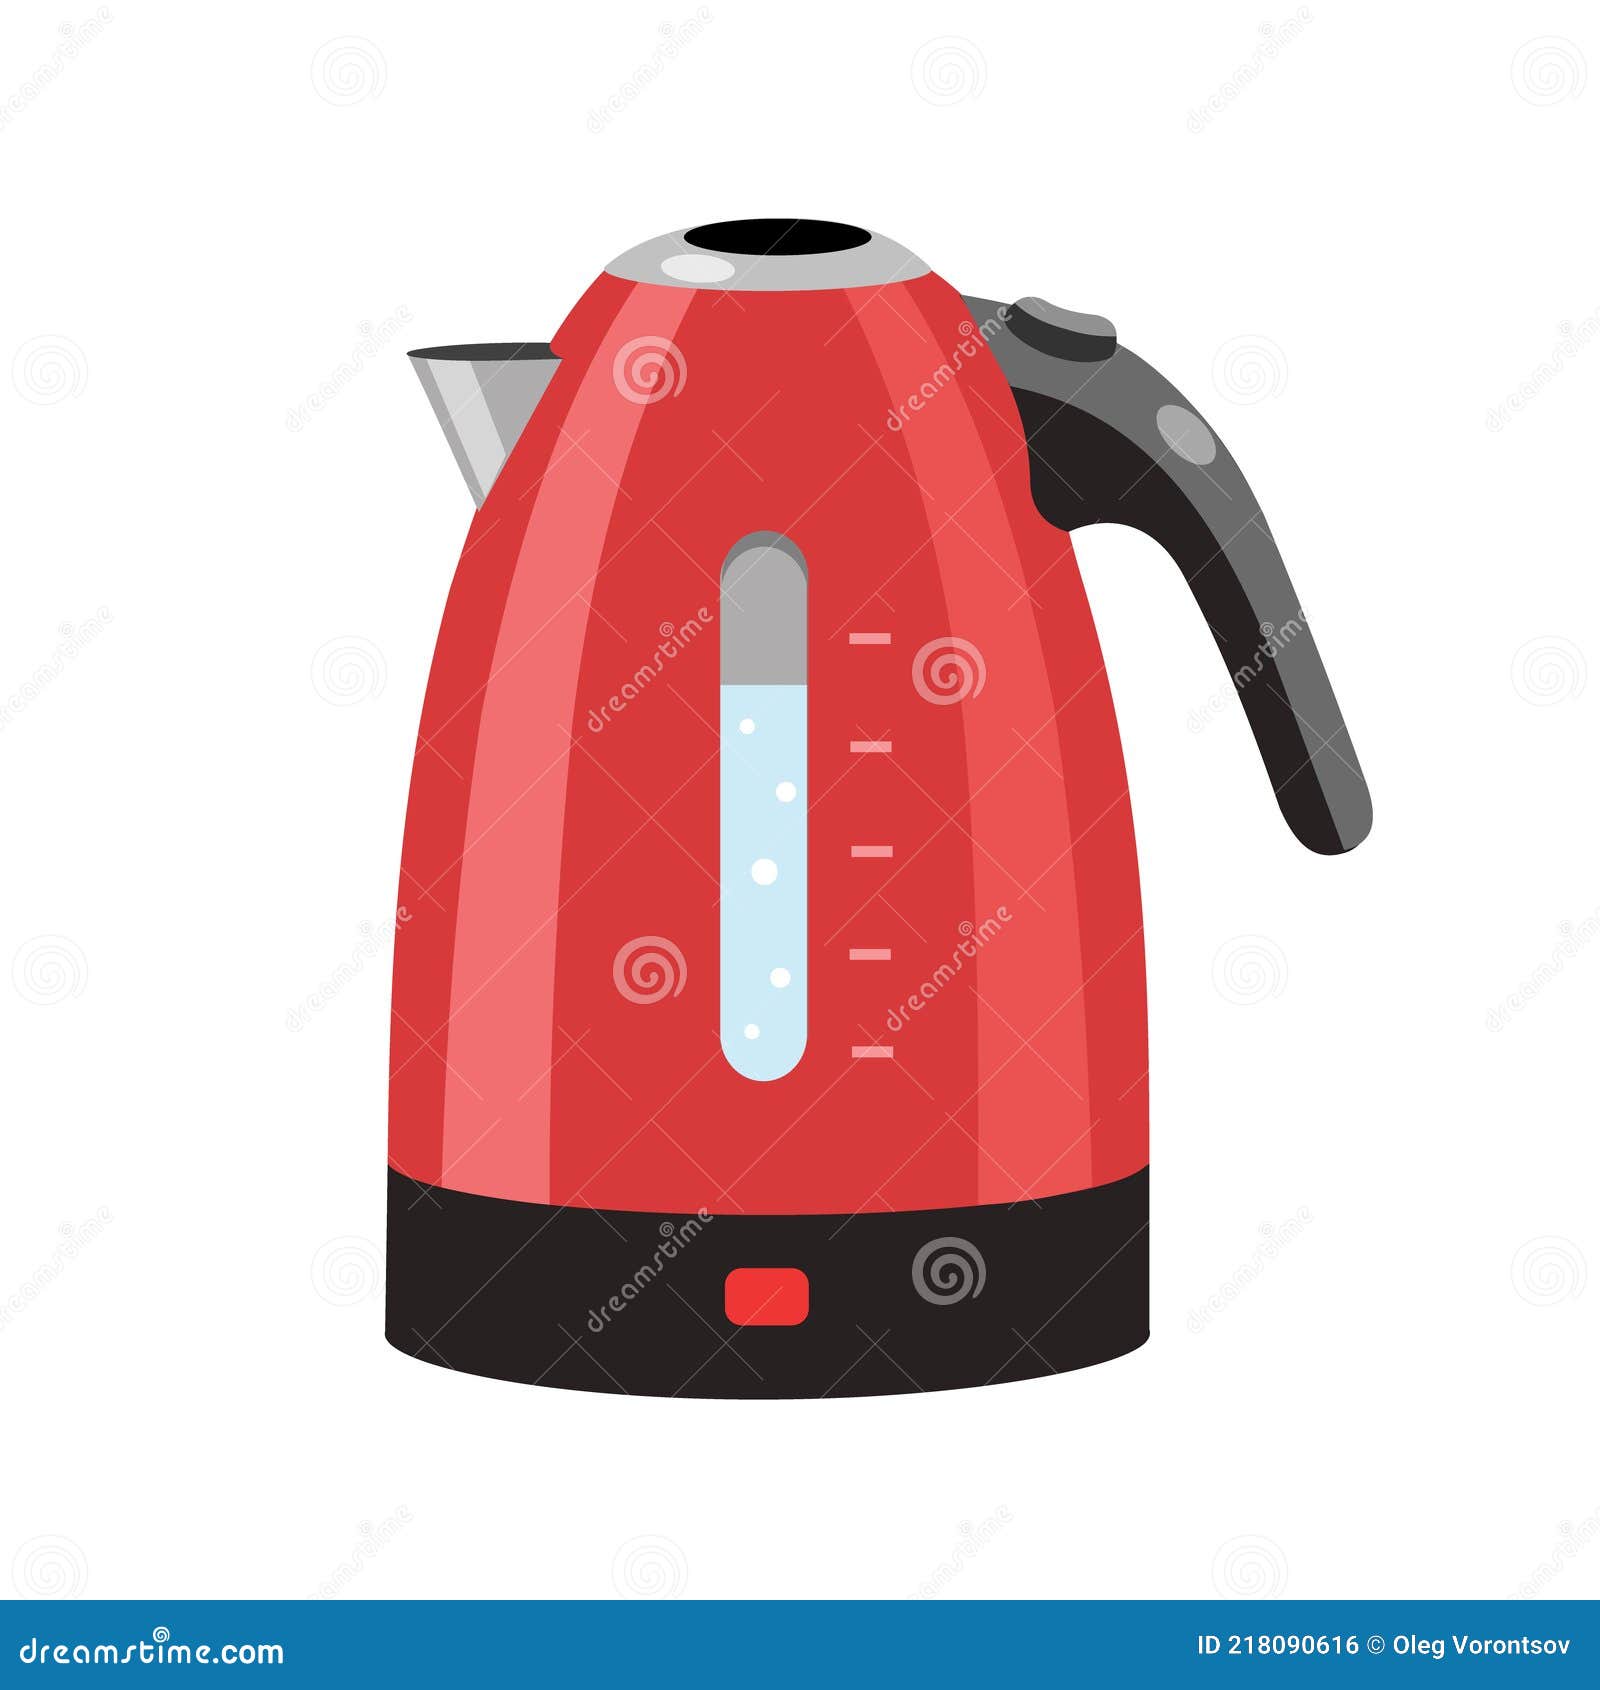 Boiling kettle, hot water kettle, kettle, tea kettle, teapot icon